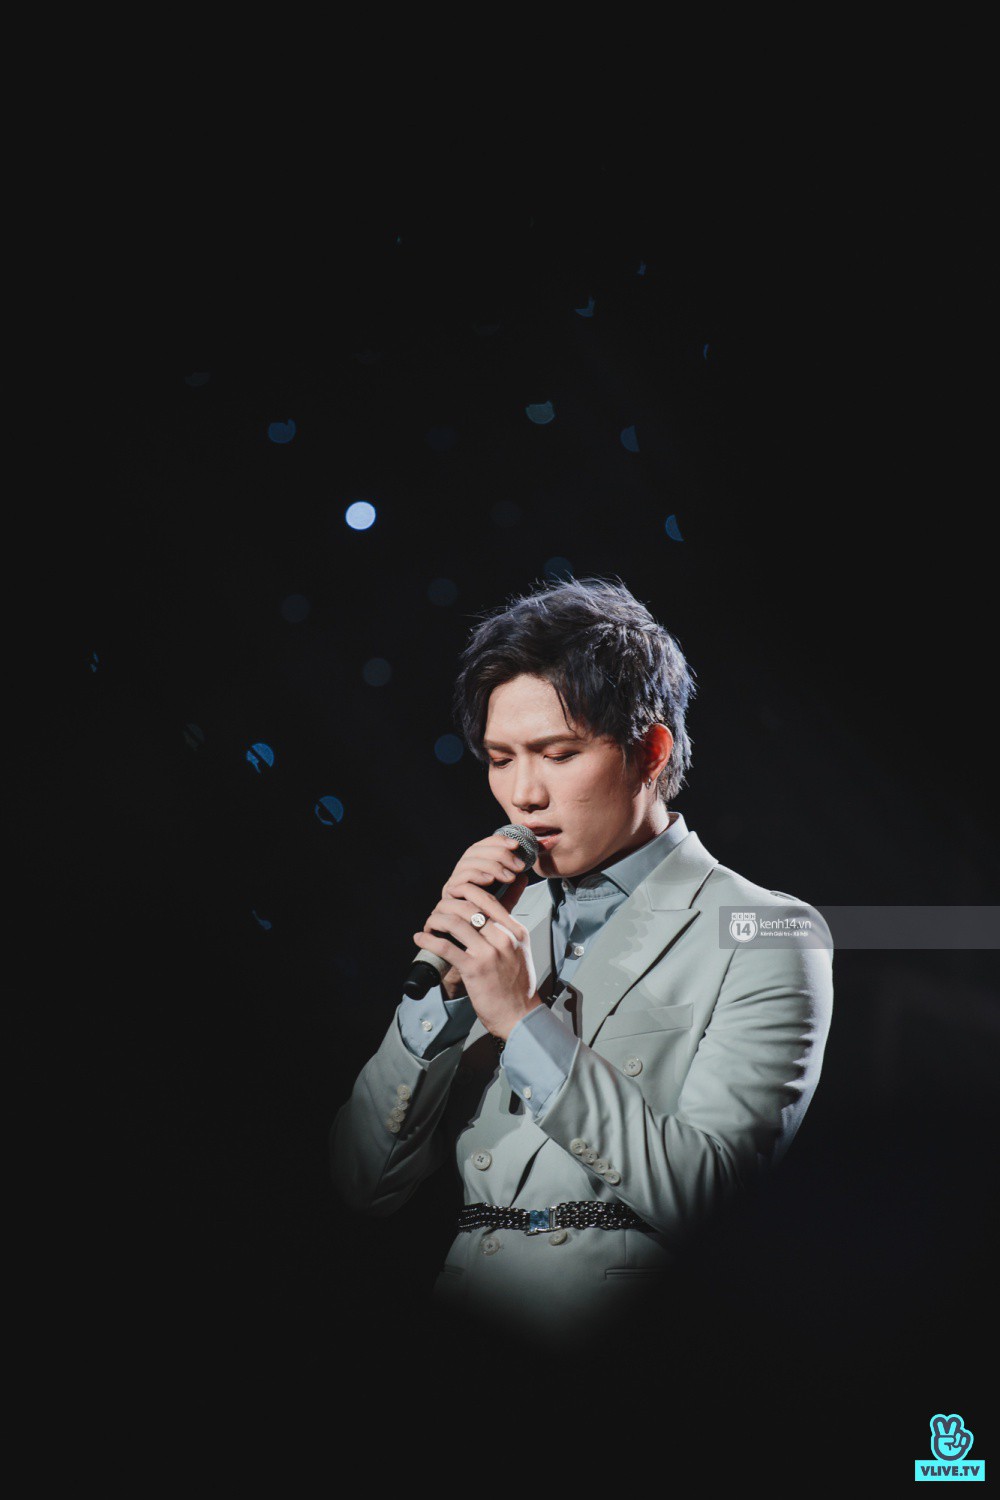 Khoảnh khắc đẹp của dàn sao Việt-Hàn trong show diễn đêm qua khiến khán giả bùng nổ - Ảnh 4.